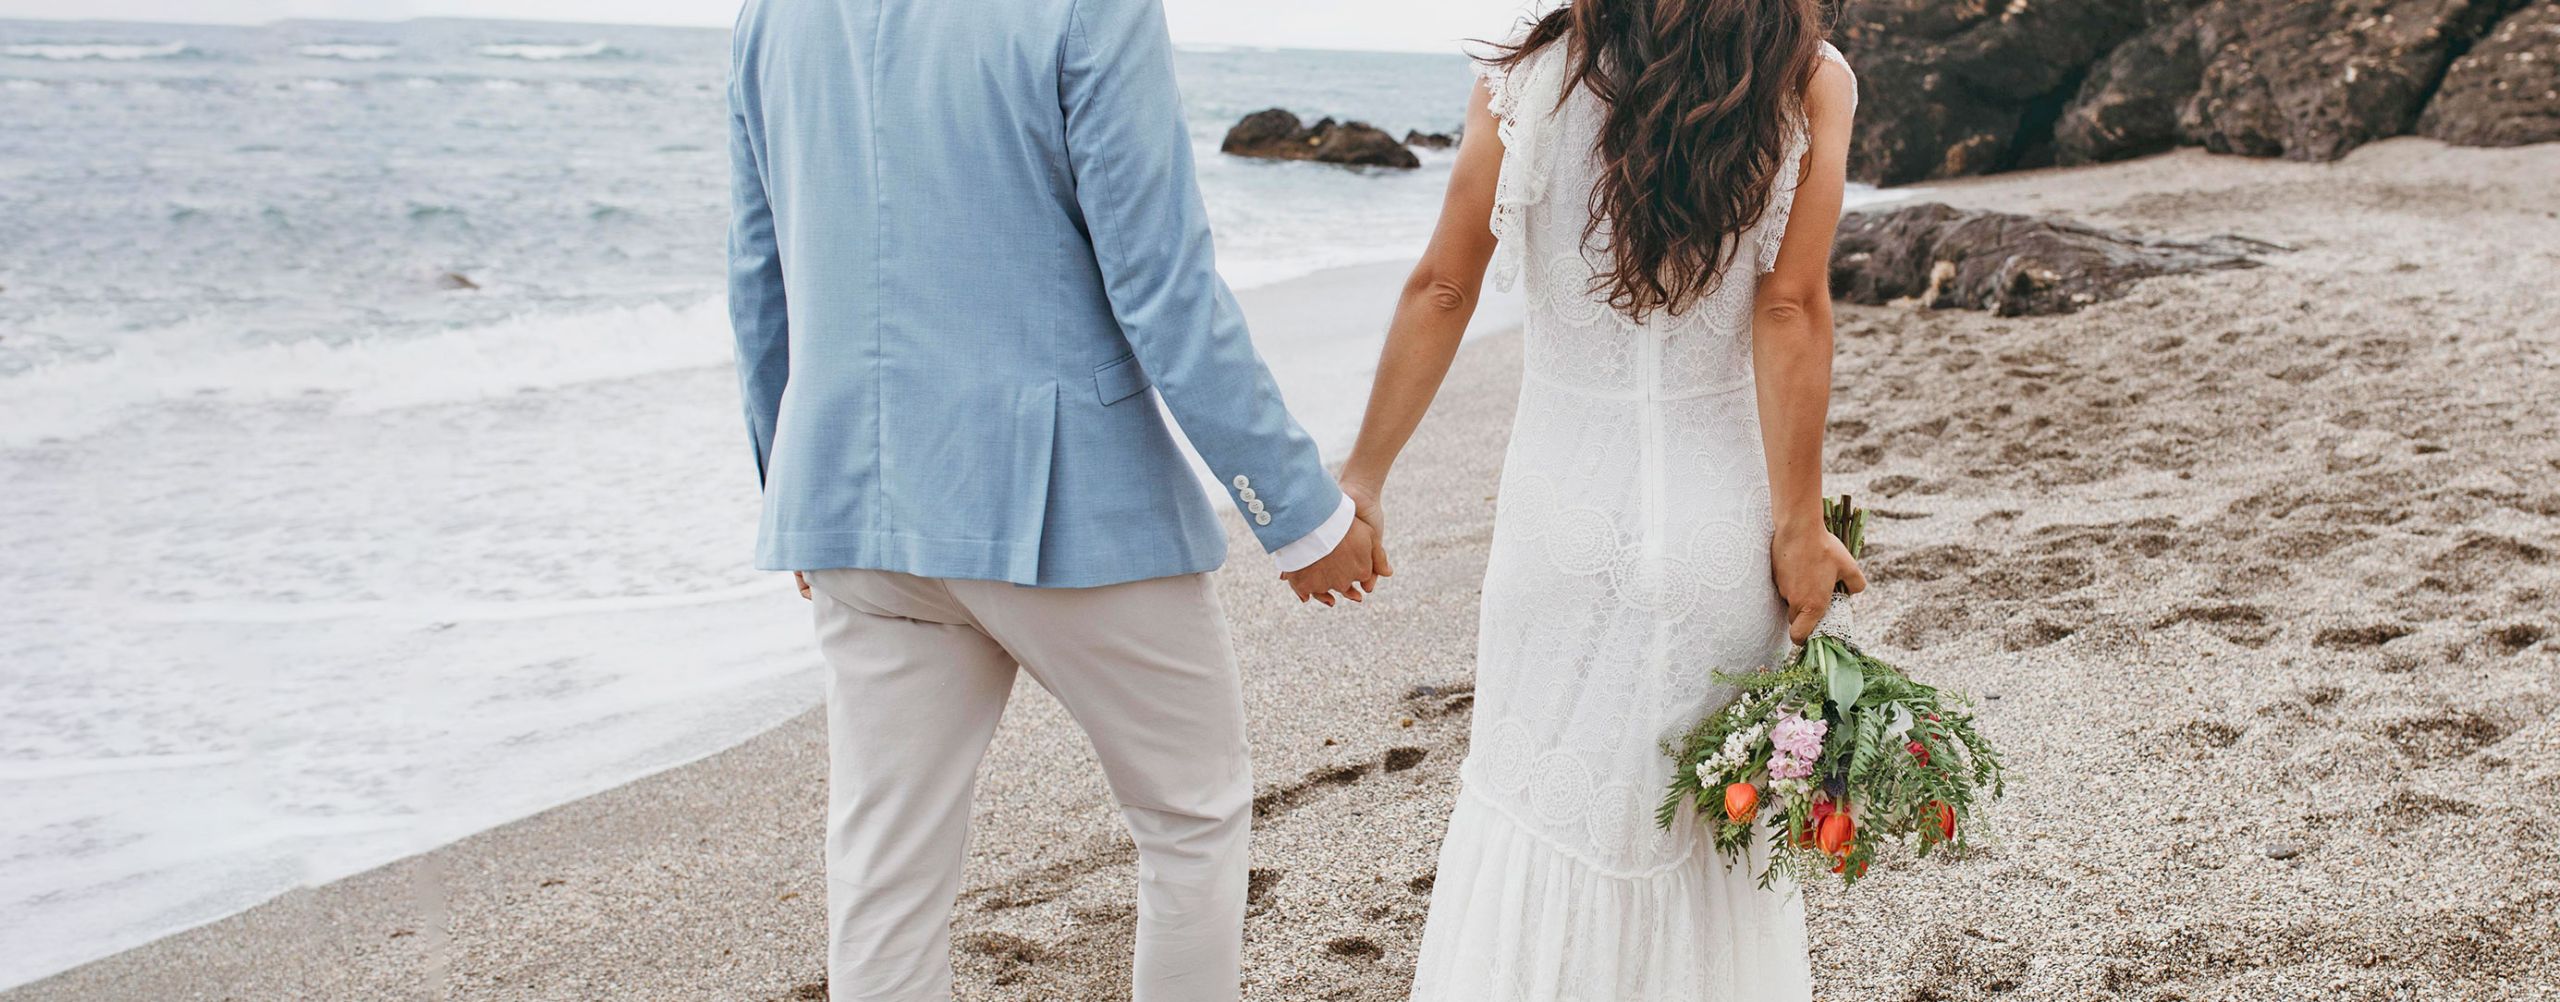 Una pareja durante una sesión de fotos de boda en una playa de Ibiza